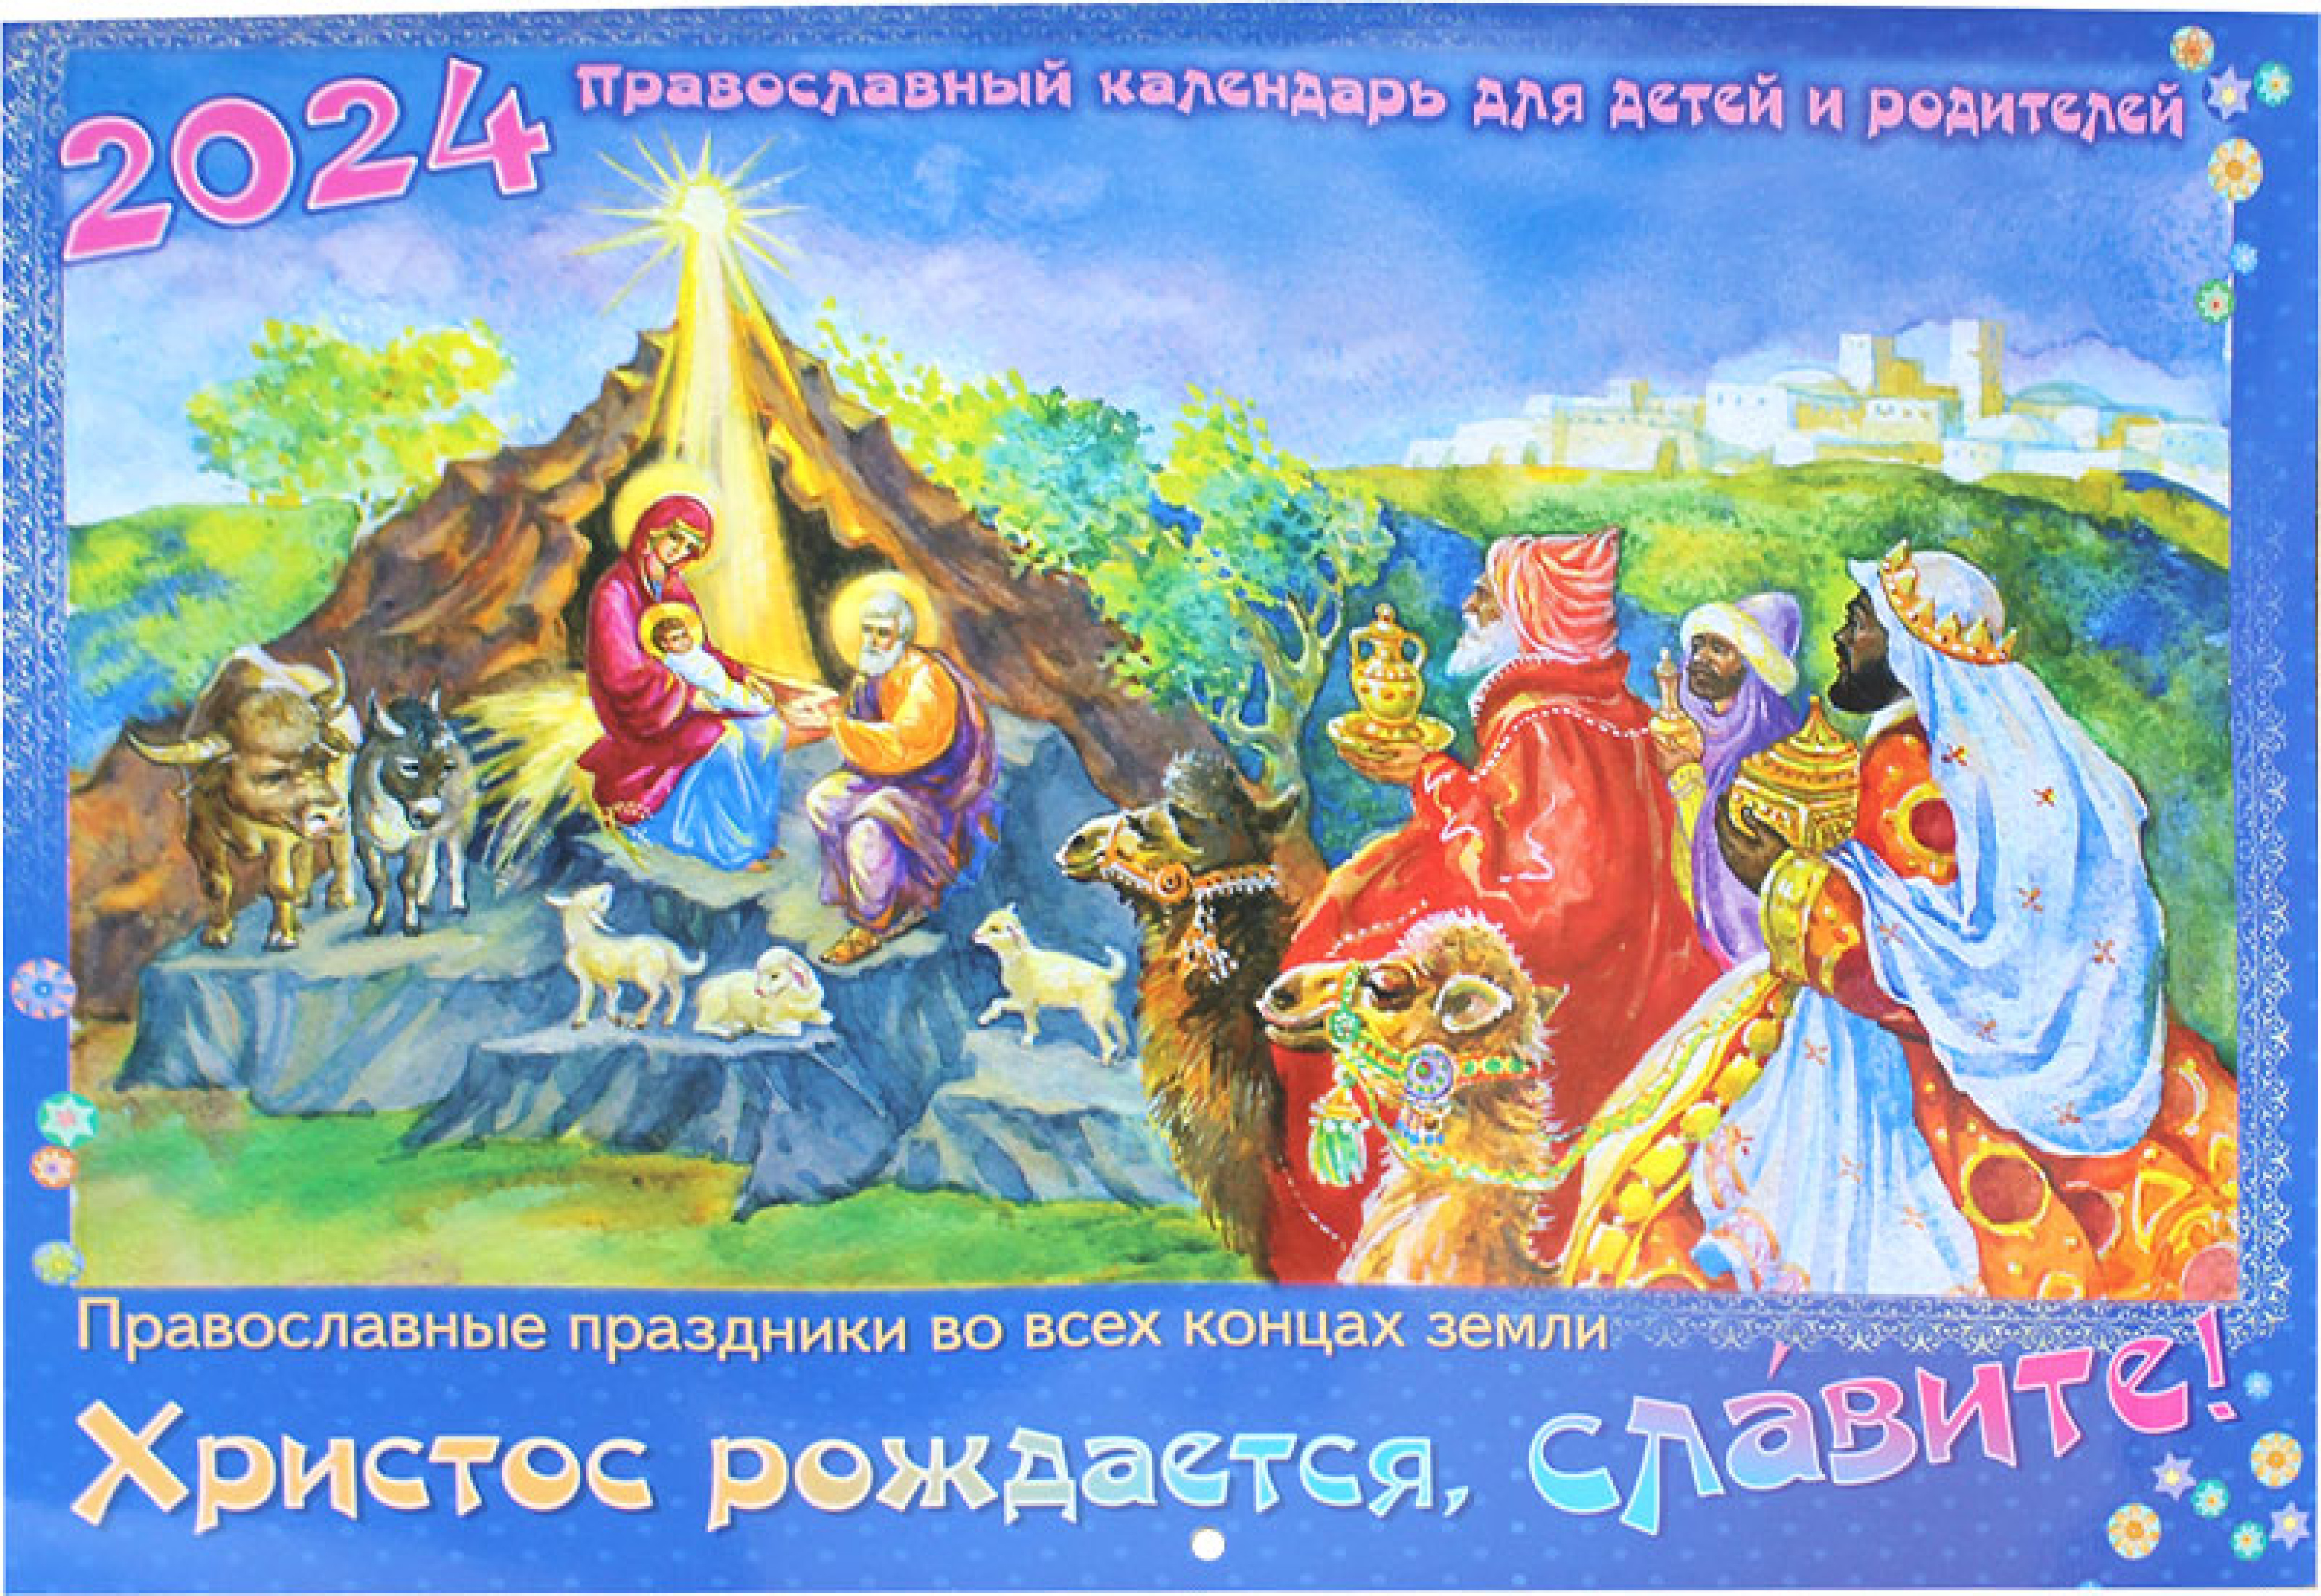 Христос рождается, славите! Православный календарь для детей и родителей на 2024 год